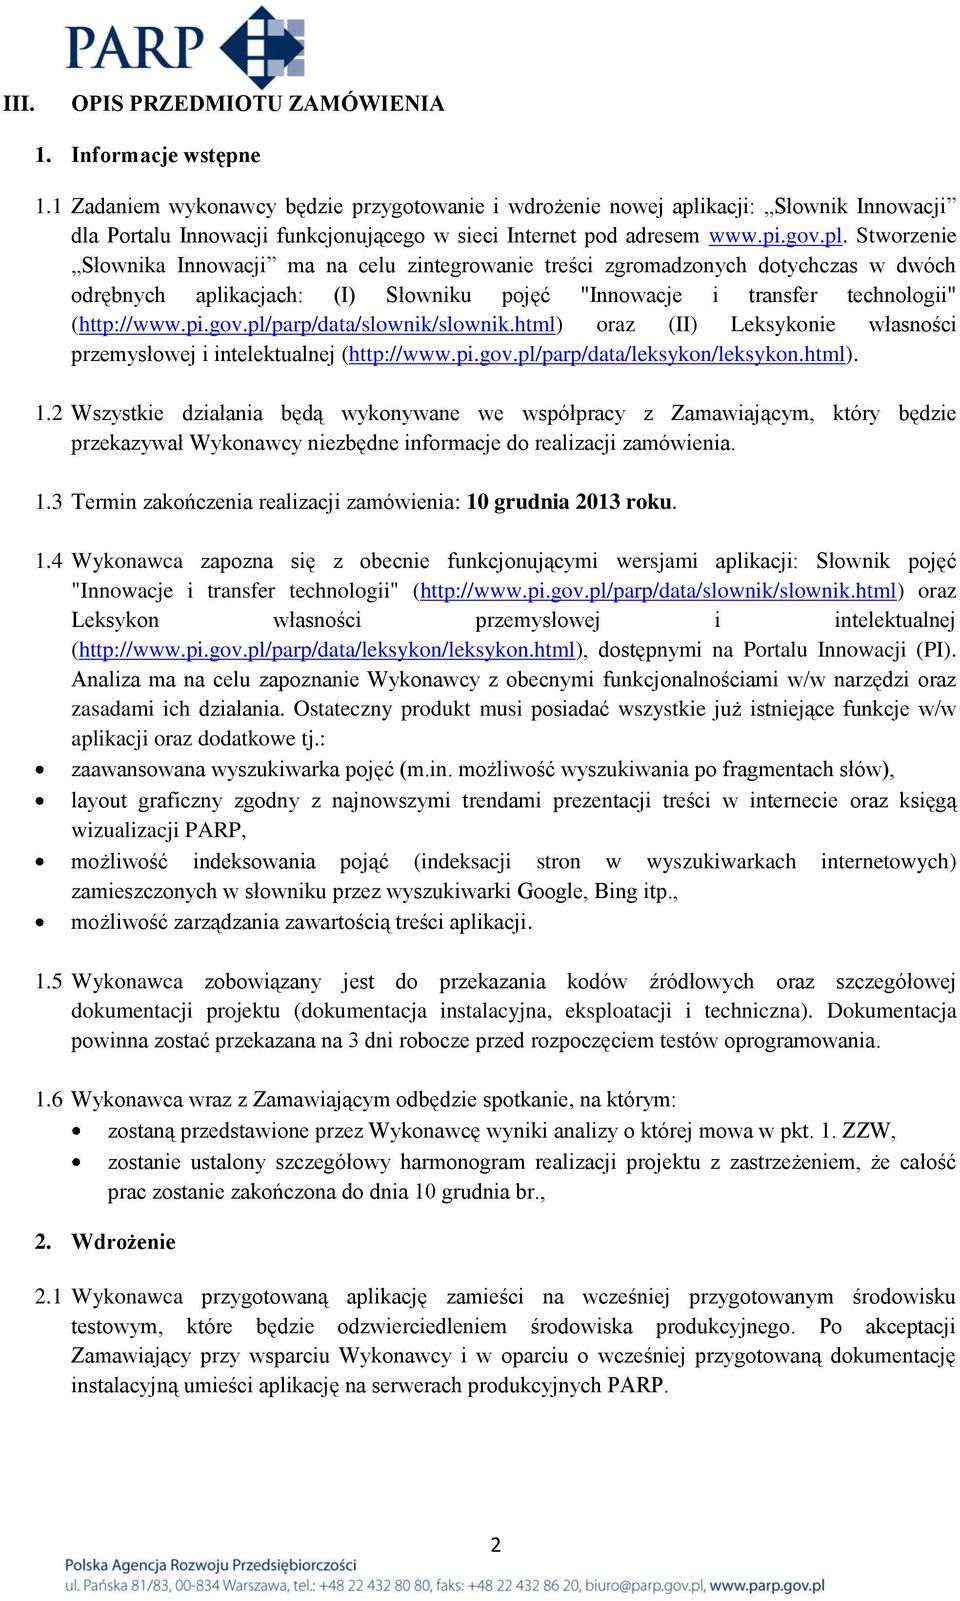 kacji: Słownik Innowacji dla Portalu Innowacji funkcjonującego w sieci Internet pod adresem www.pi.gov.pl.